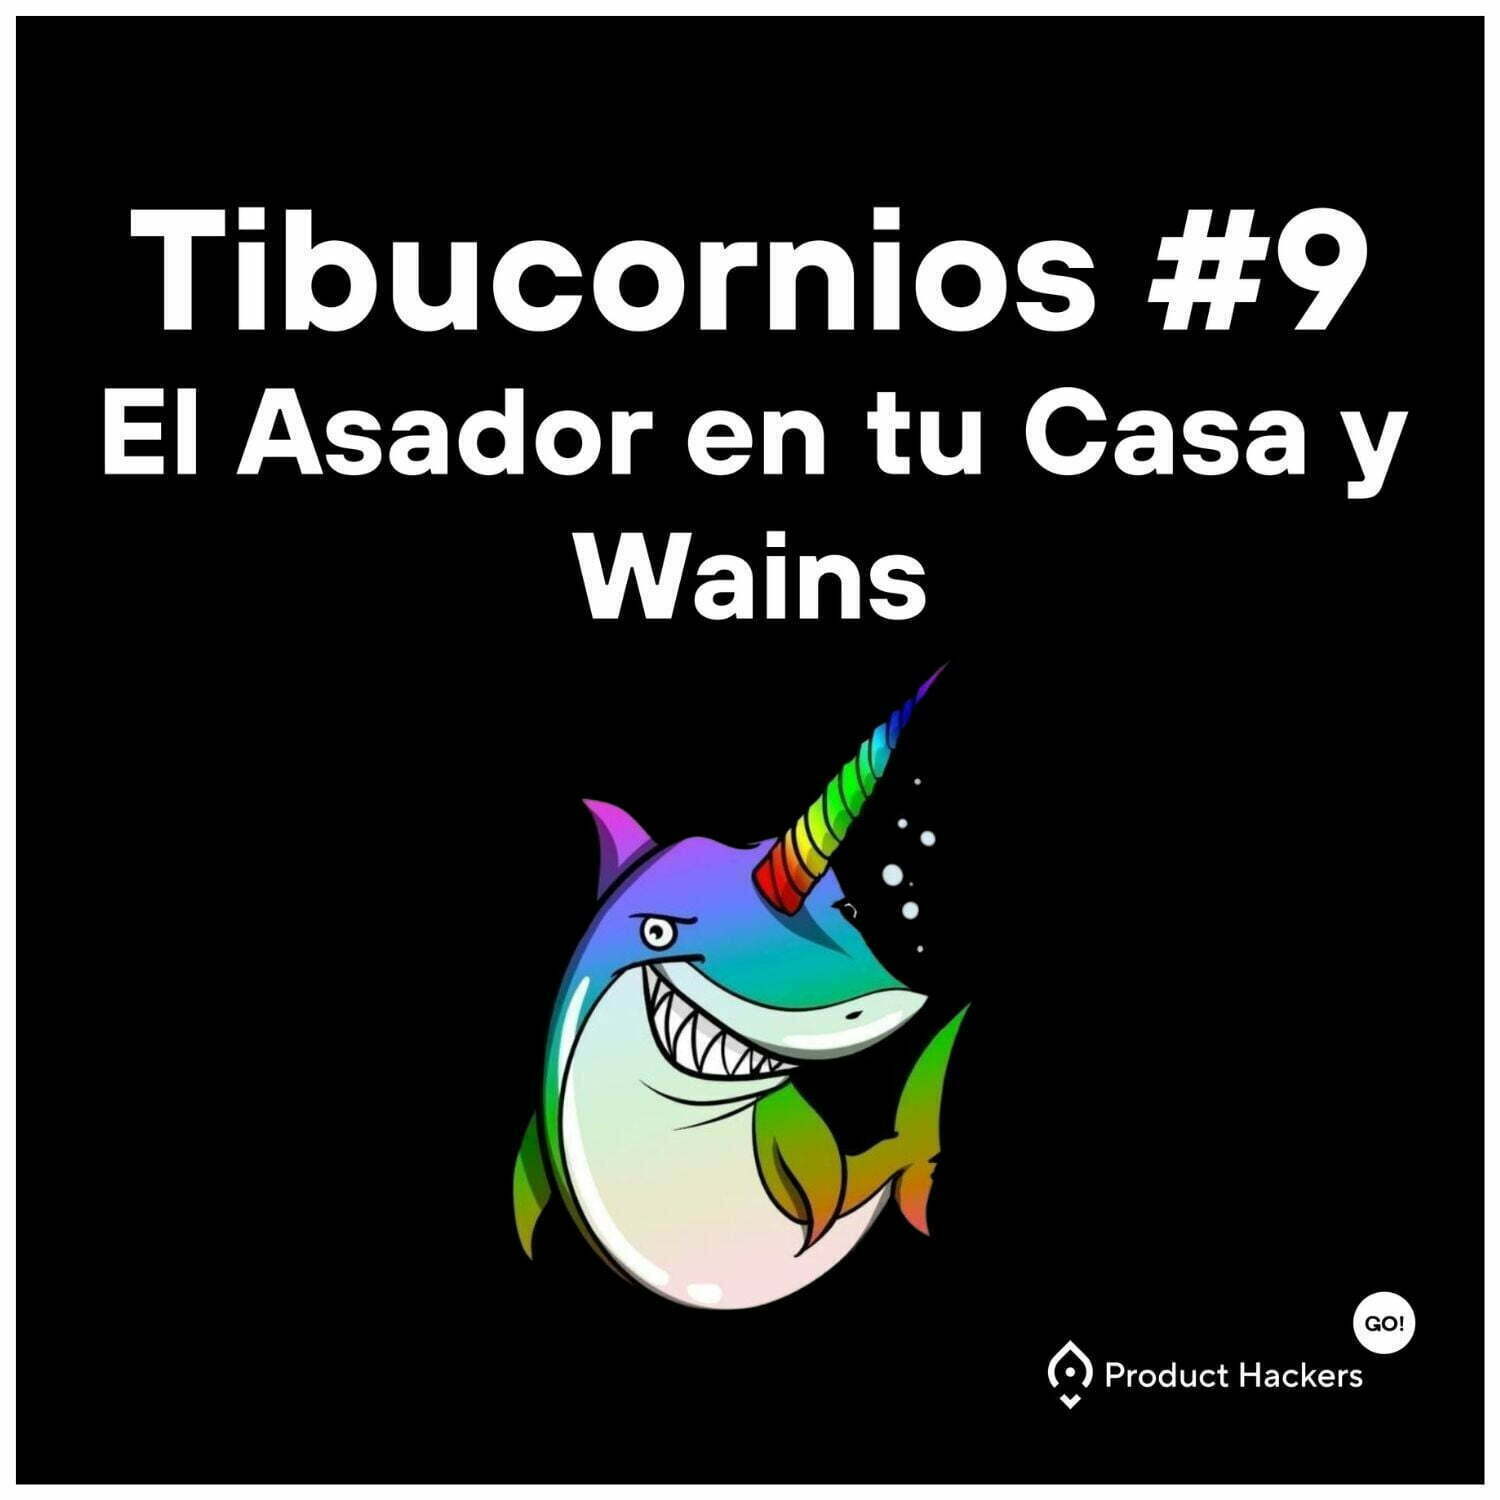 Tibucornios #9: El Asador en tu Casa y Wains